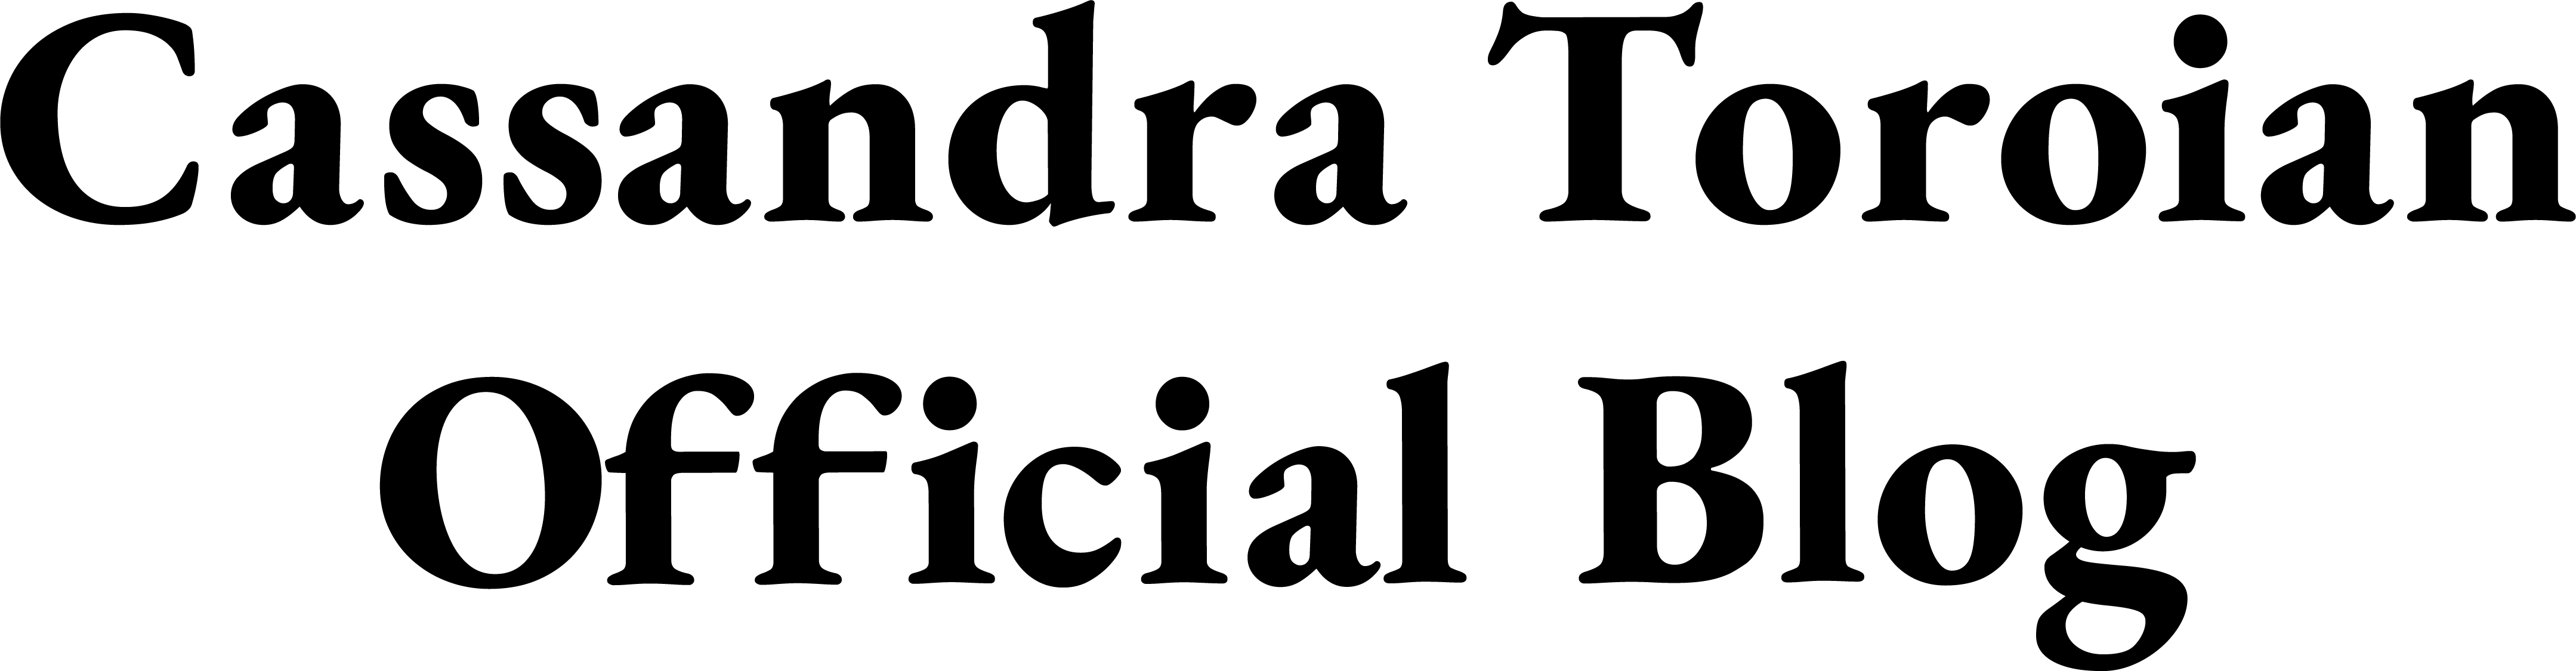 Cassandra Toroian Official Blog Logo